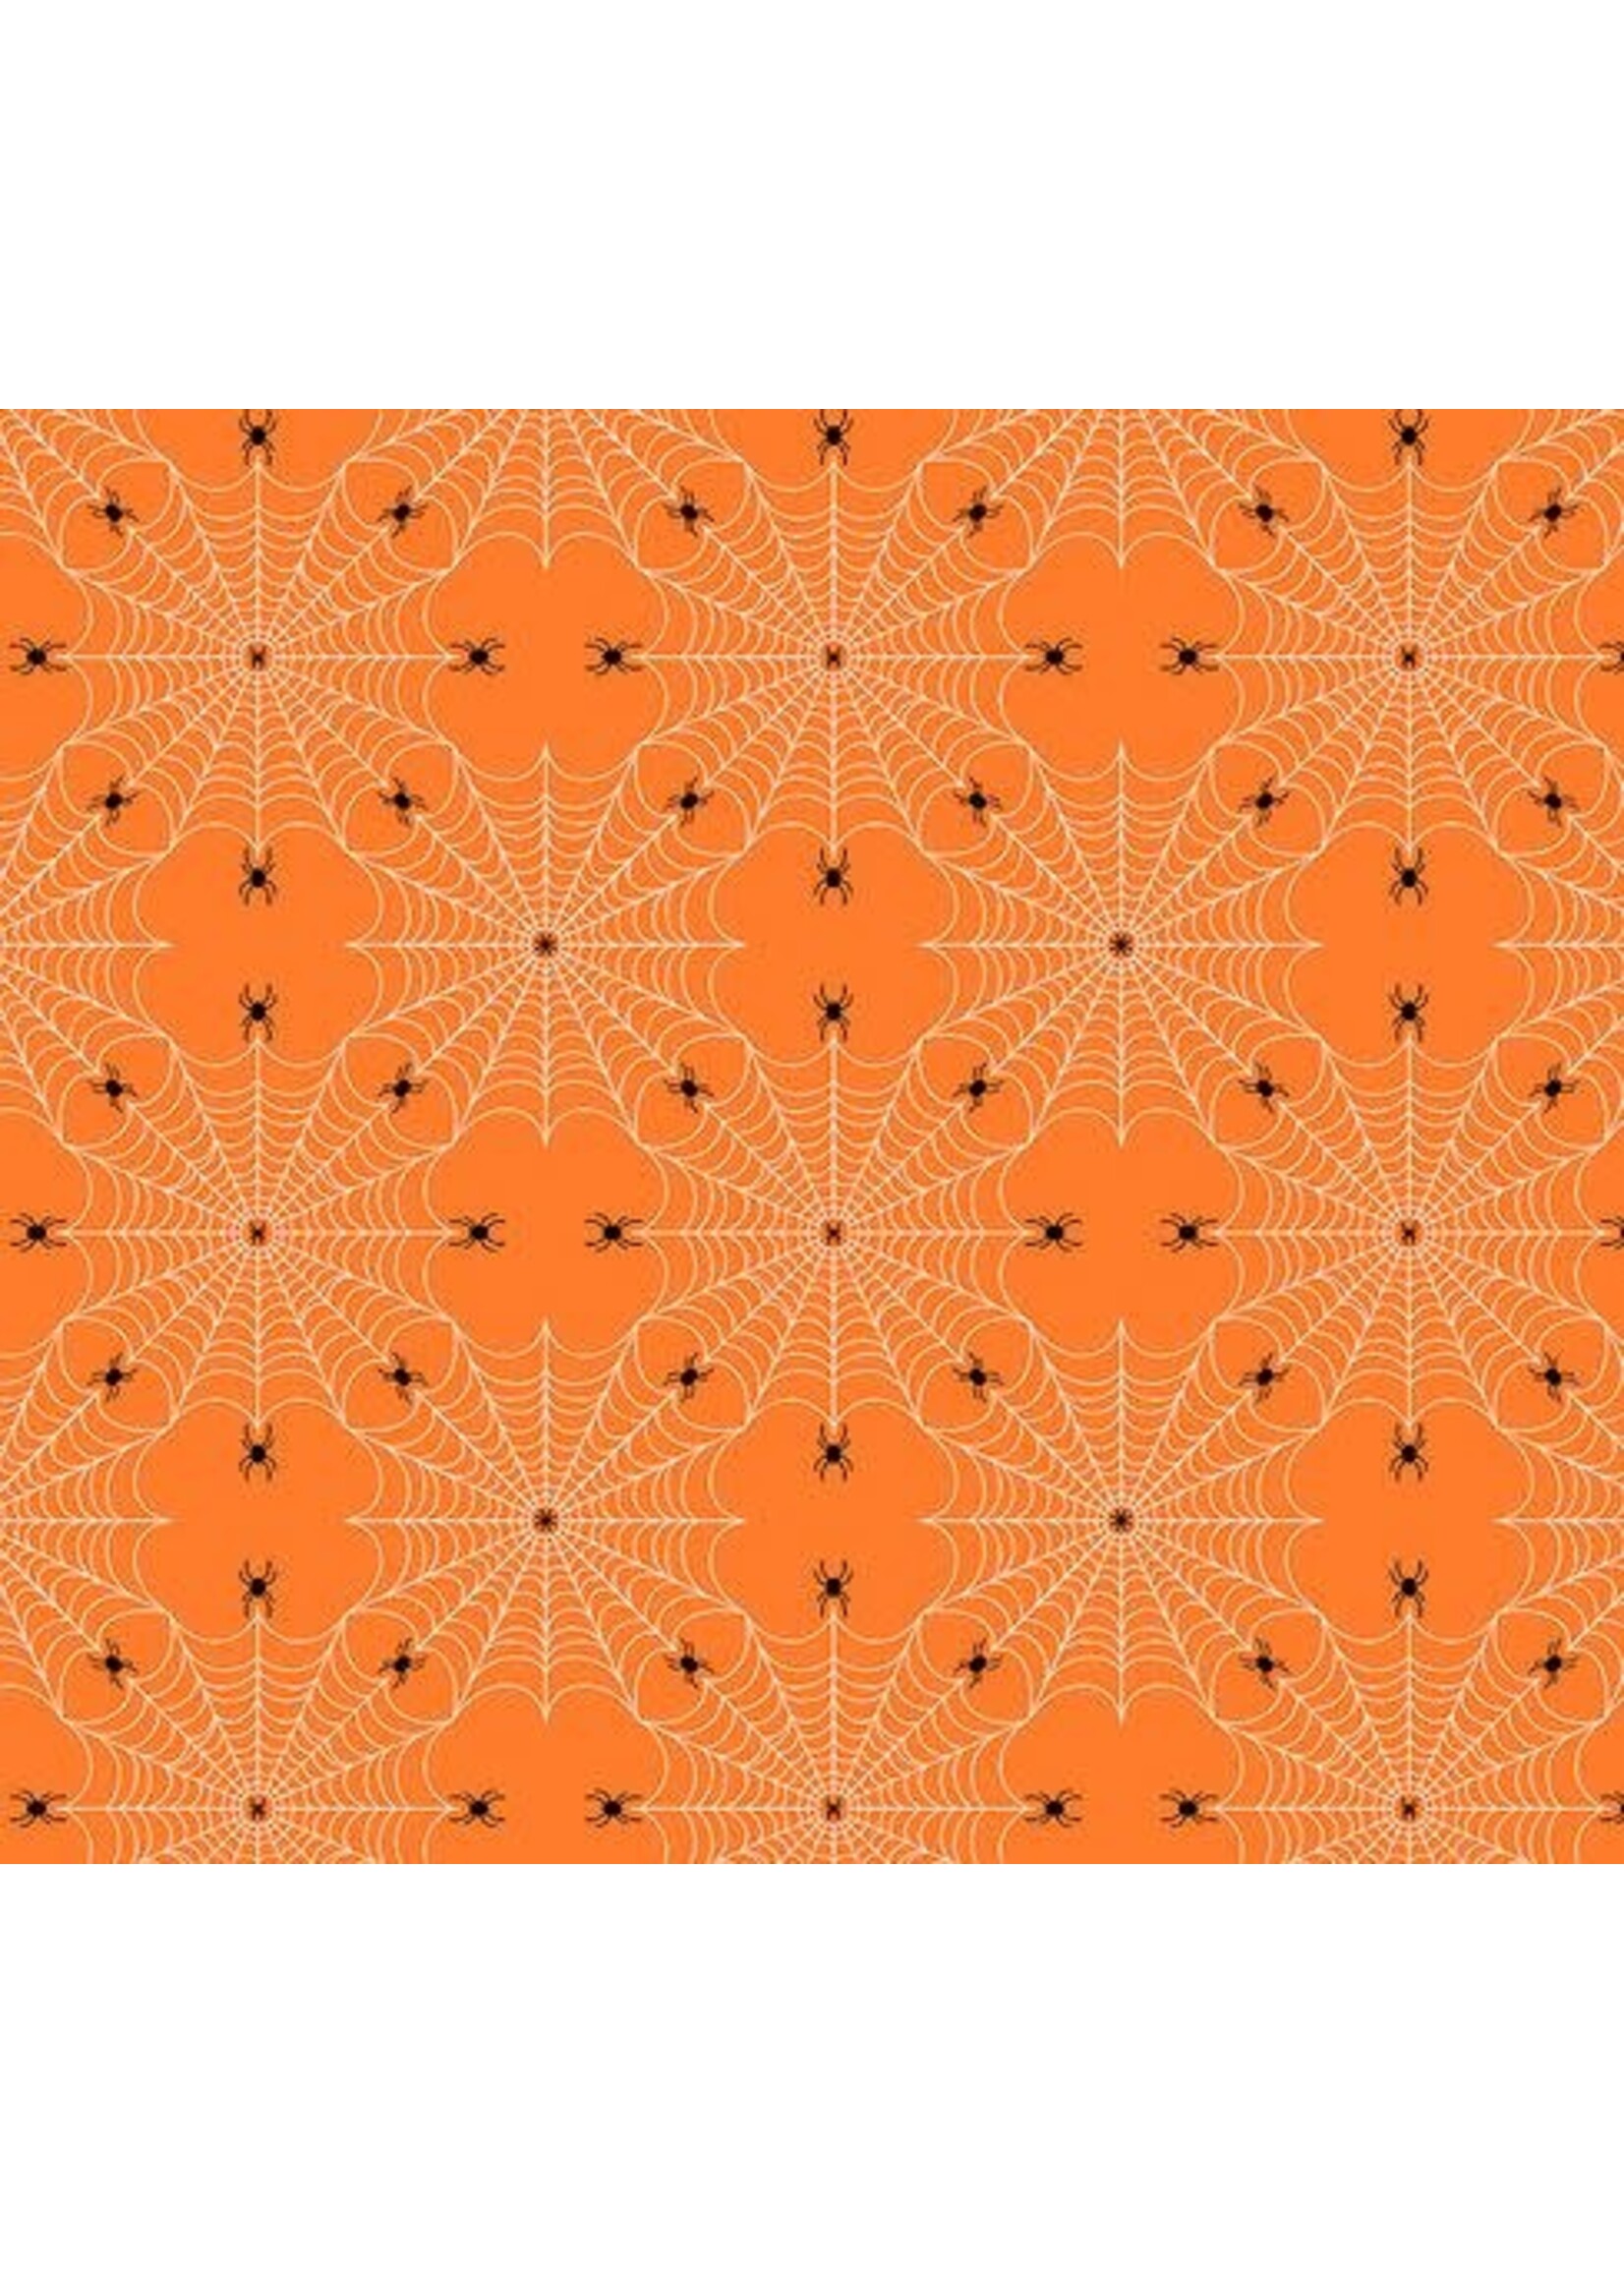 FreeSpirit Fabrics Spiderweb- Orange - Per 1/2 mtr